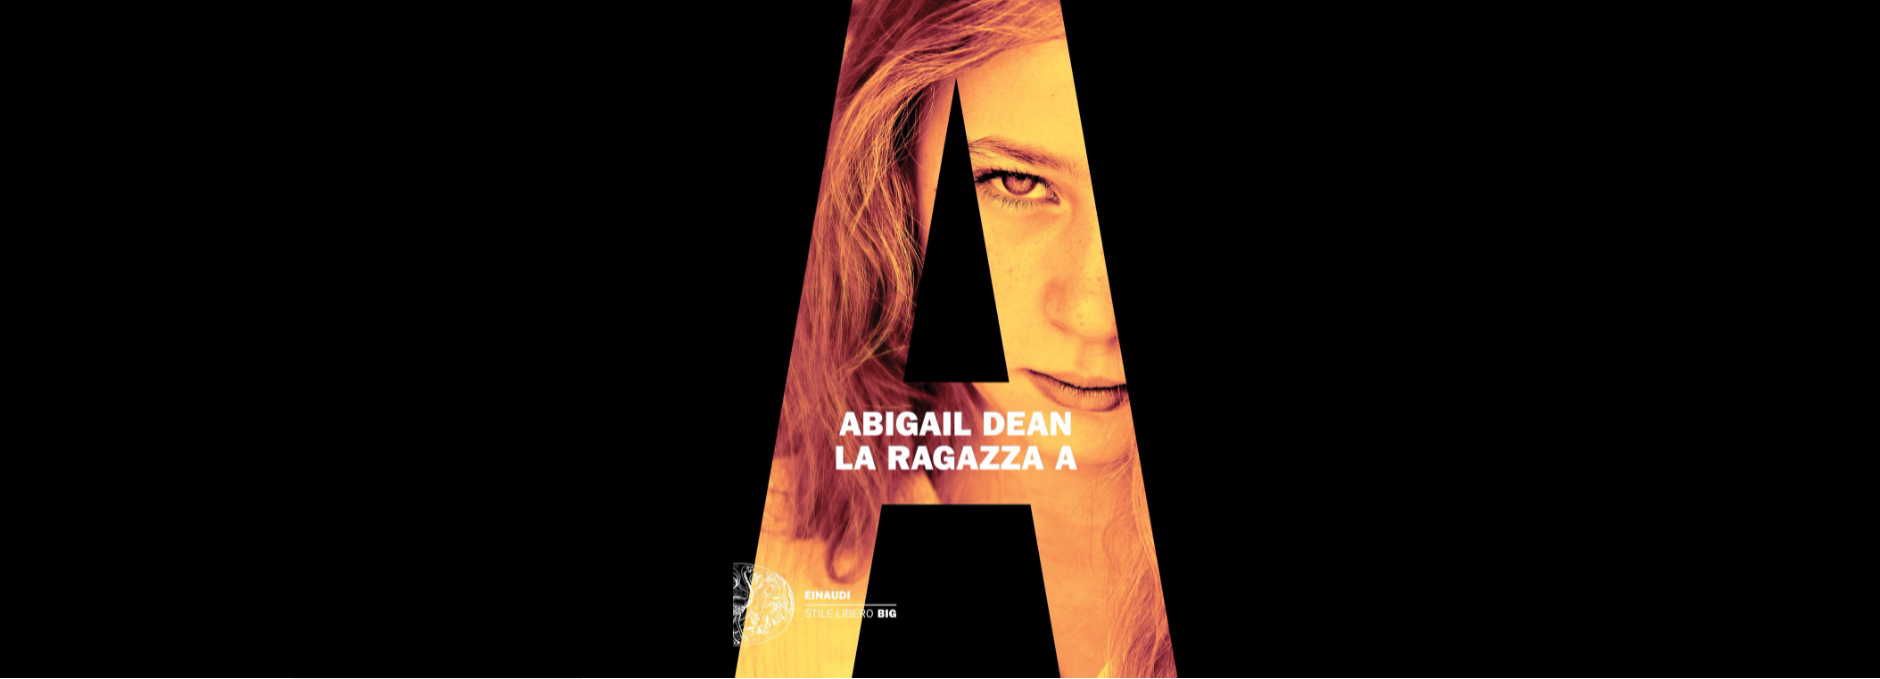 “La ragazza A” di Abigail Dean, uno dei romanzi più contesi all’ultima Fiera nazionale del libro di Francoforte